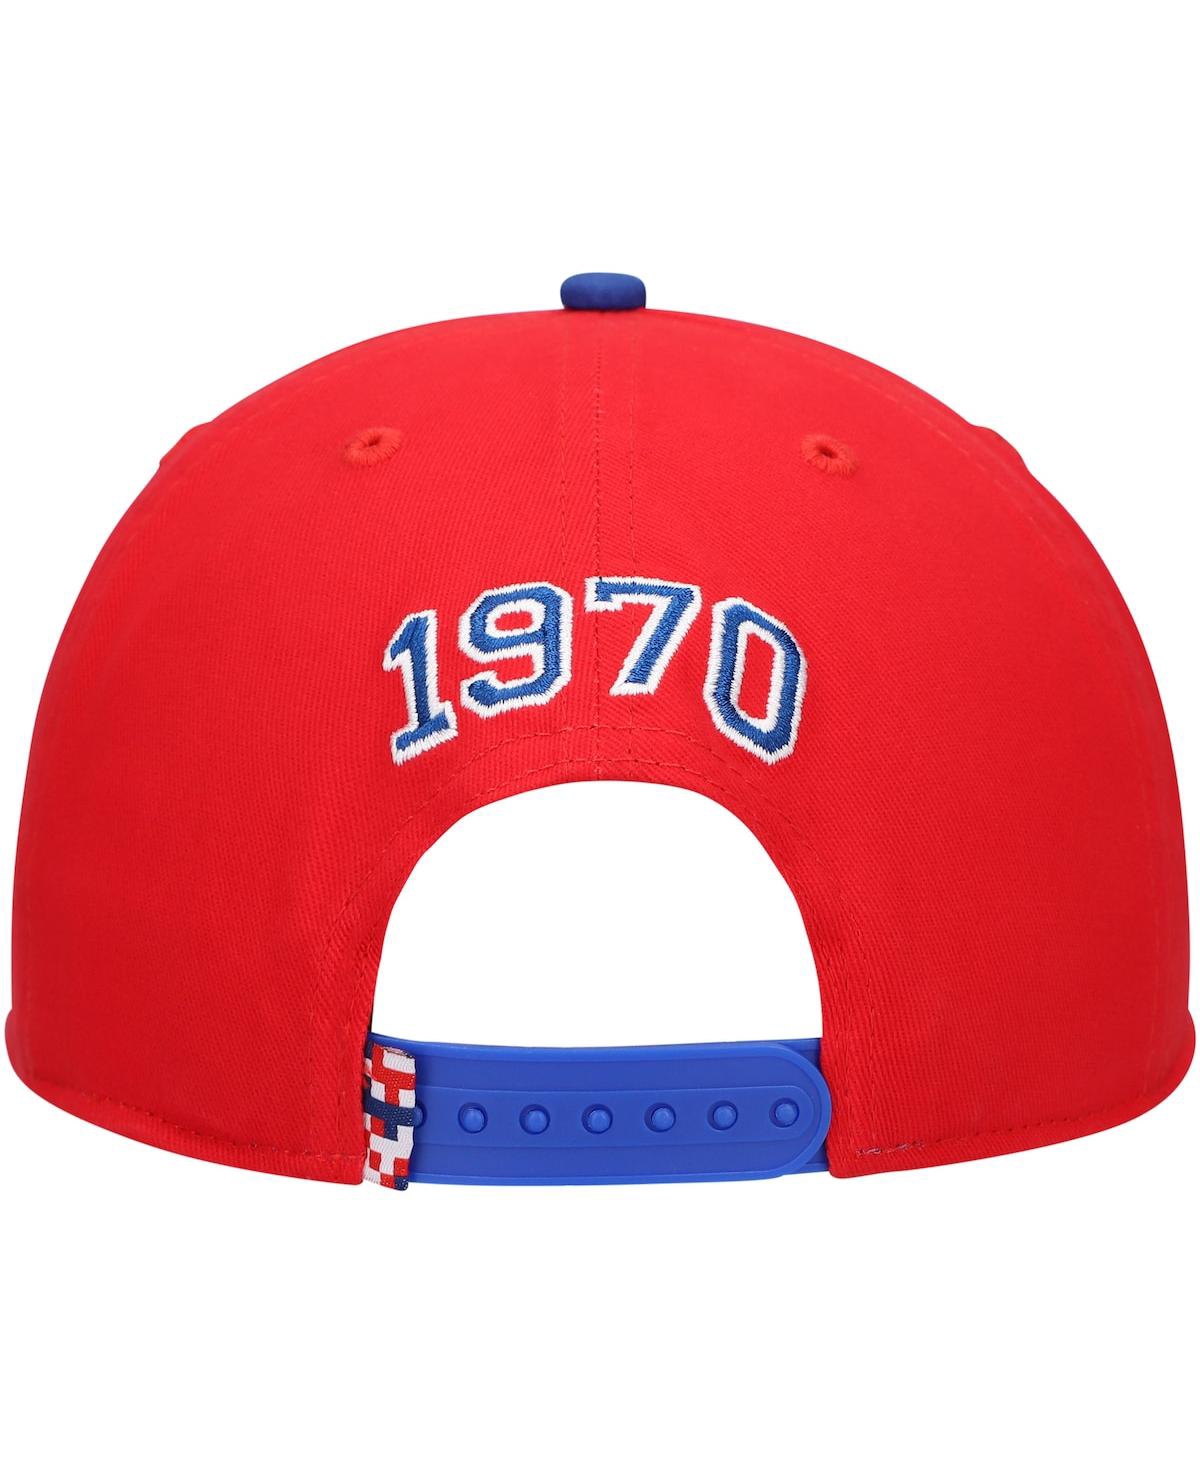 Shop Fan Ink Men's Red Paris Saint-germain Swingman Snapback Hat